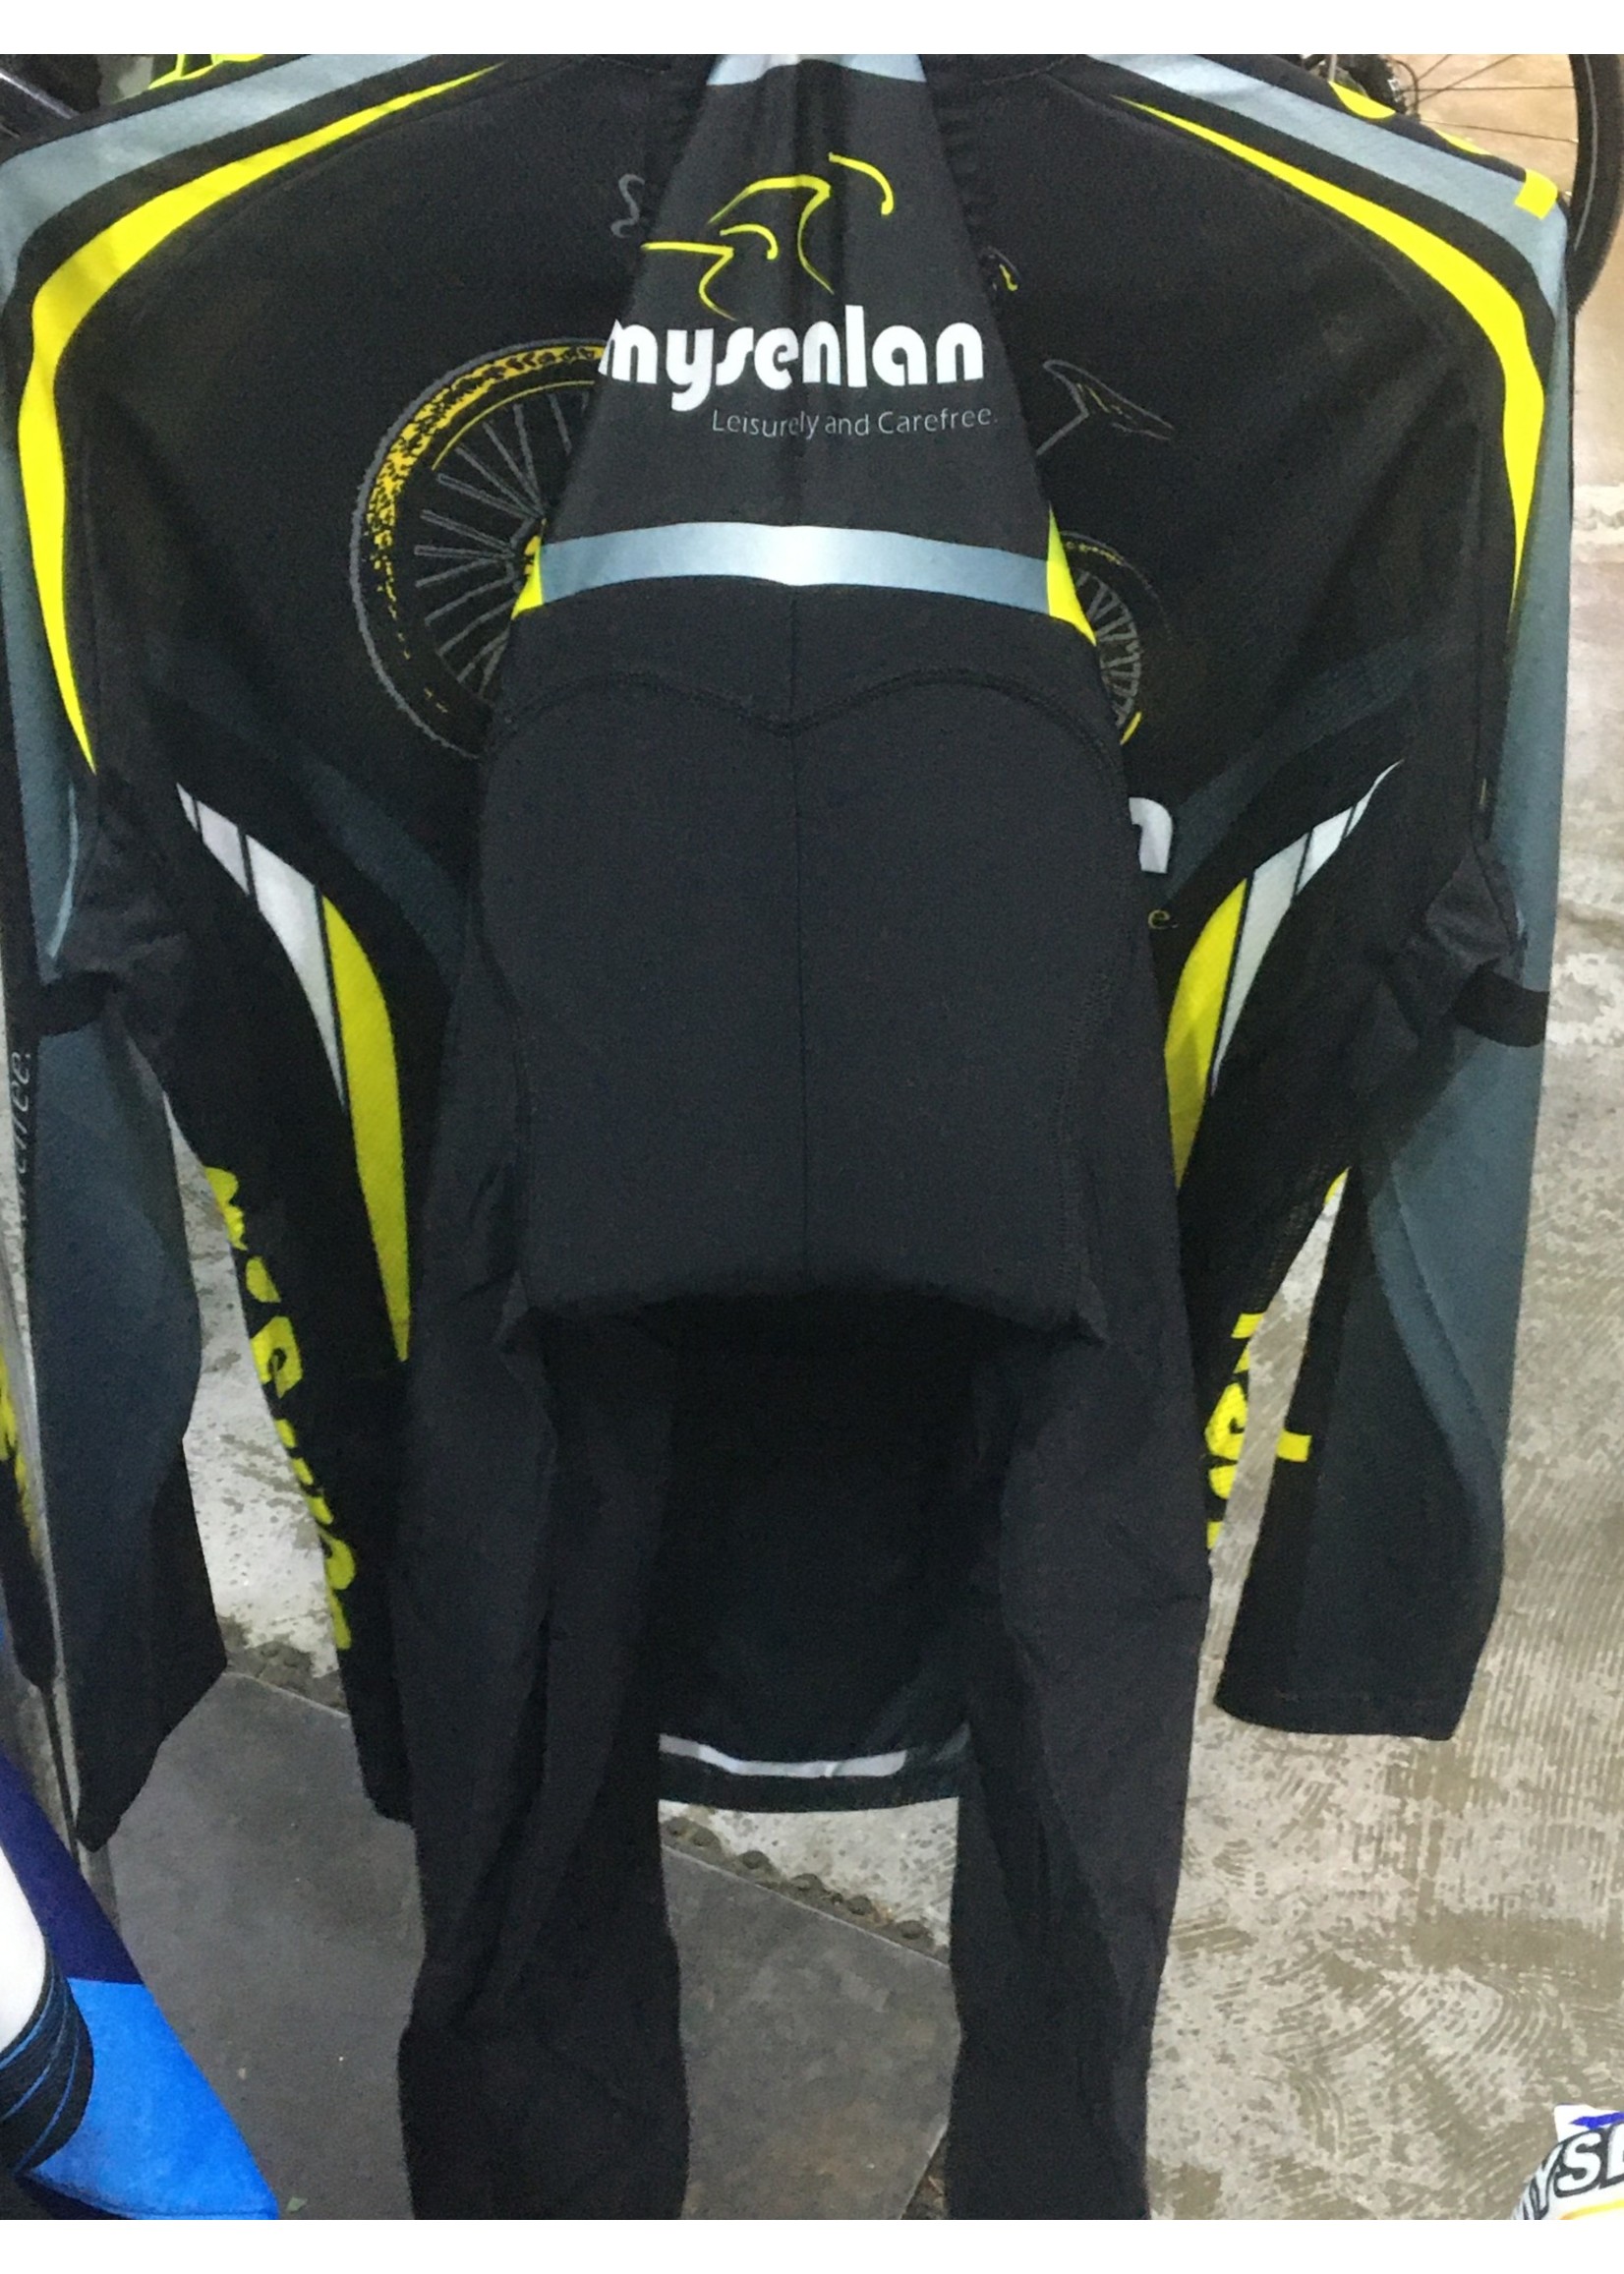 MySenlan Mysenlan Black/Grey/Yellow Jersey+Shorts